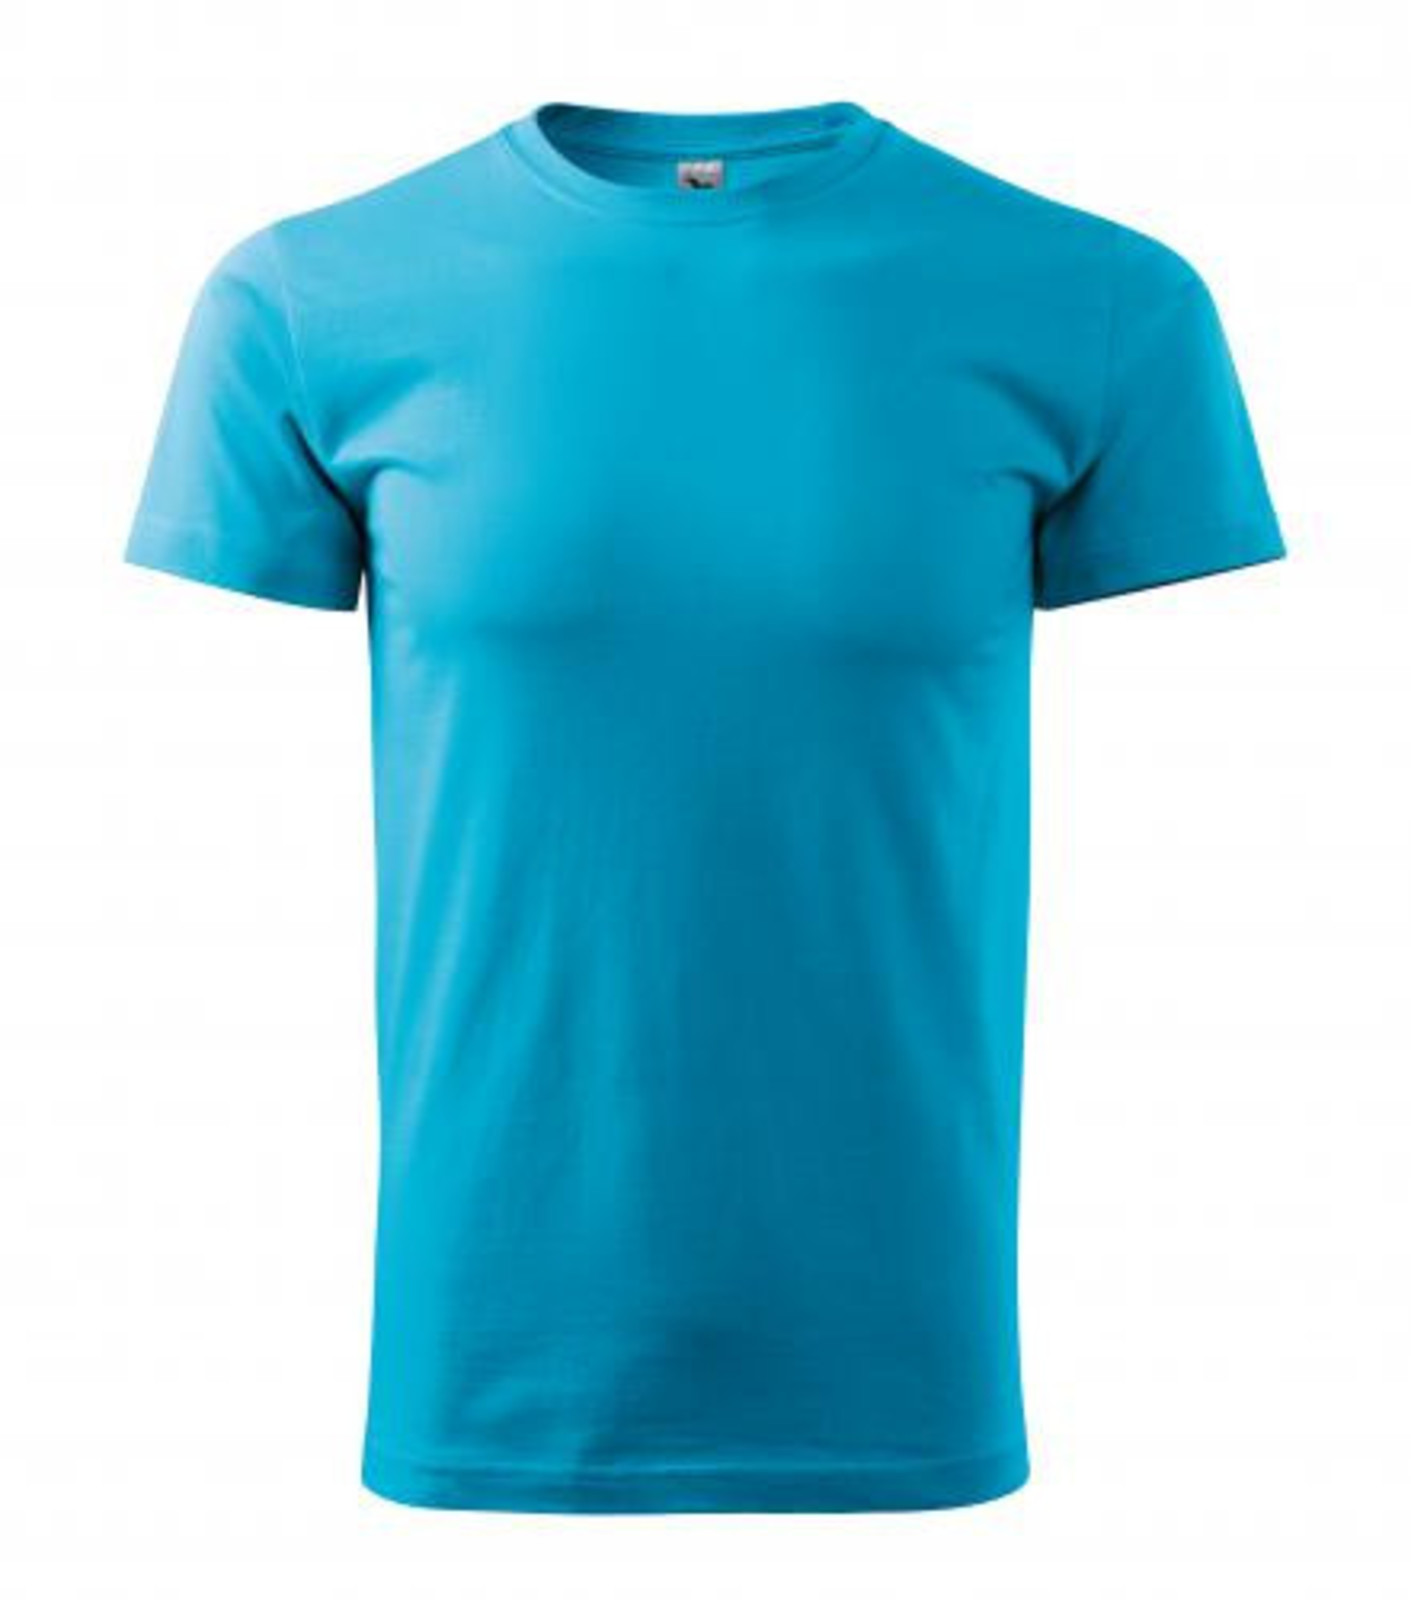 Pánske tričko Malfini Basic 129 - veľkosť: XXL, farba: tyrkysová